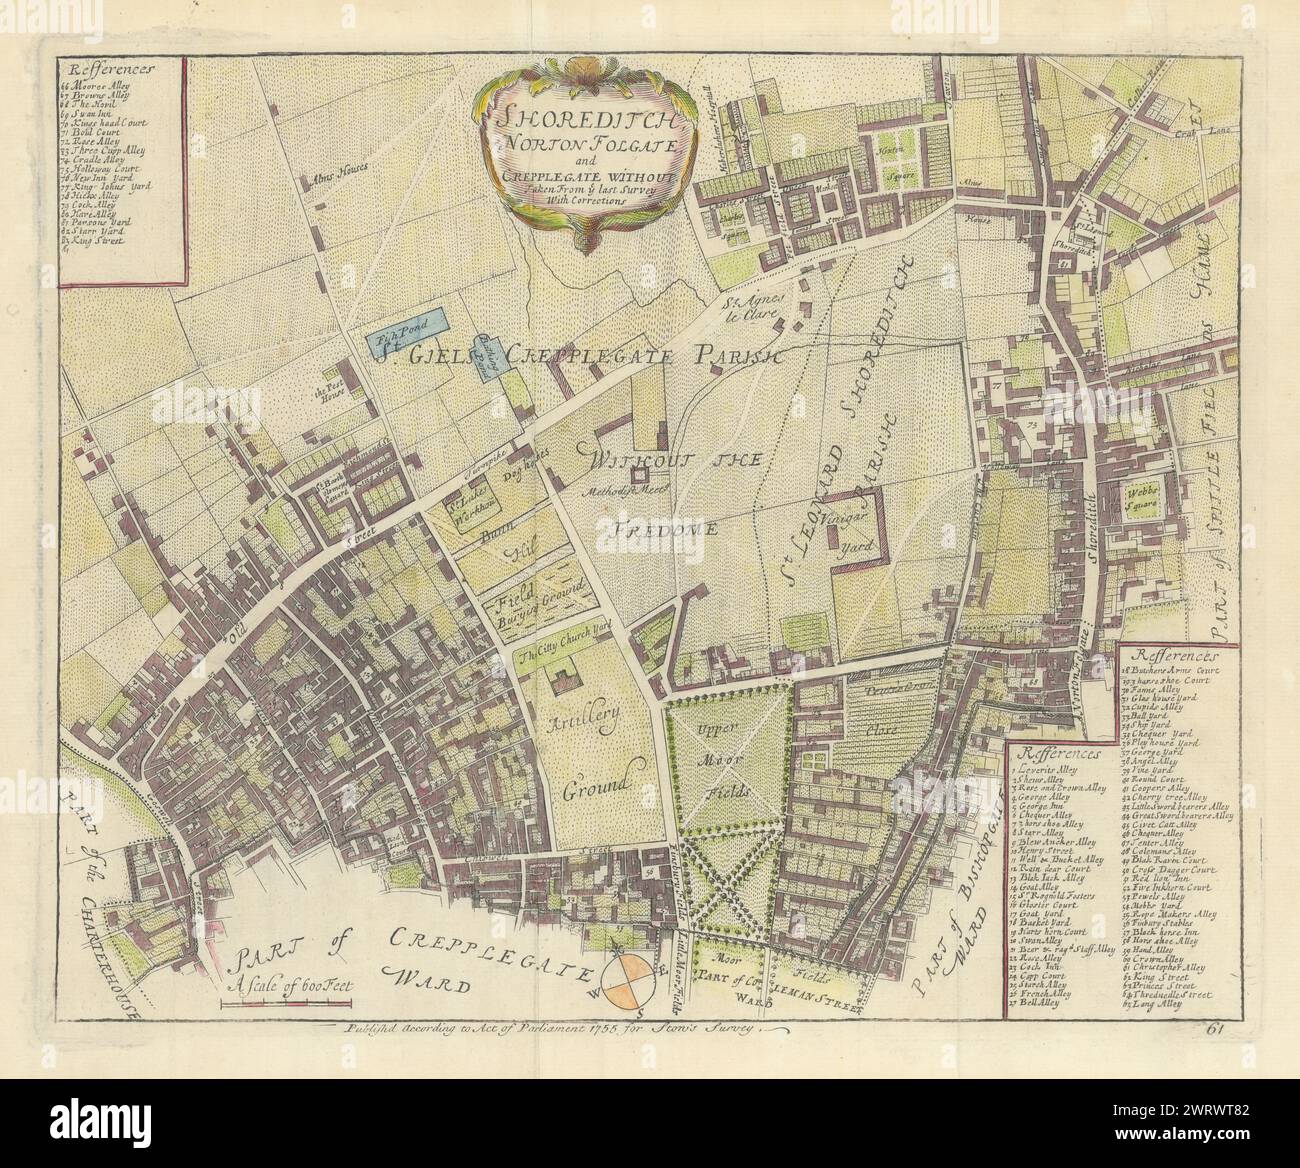 Shoreditch, Norton Folgate e Cripplegate senza. Hoxton. Mappa STIVAGGIO/STRYPE 1755 Foto Stock